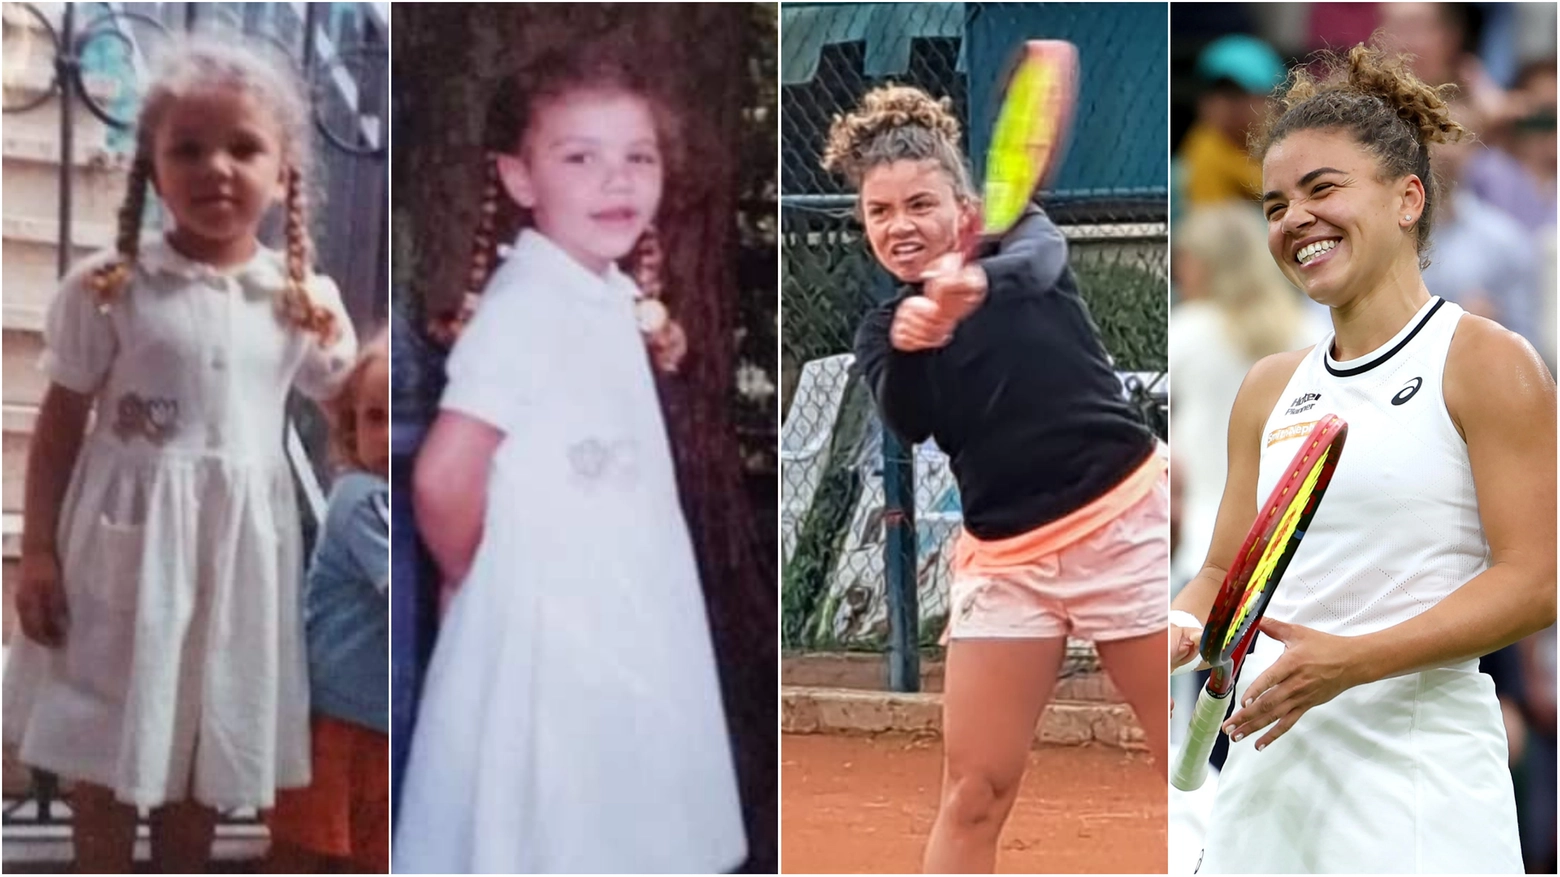 Jasmine Paolini, l'infanzia a Bagni di Lucca fino al sogno di Wimbledon